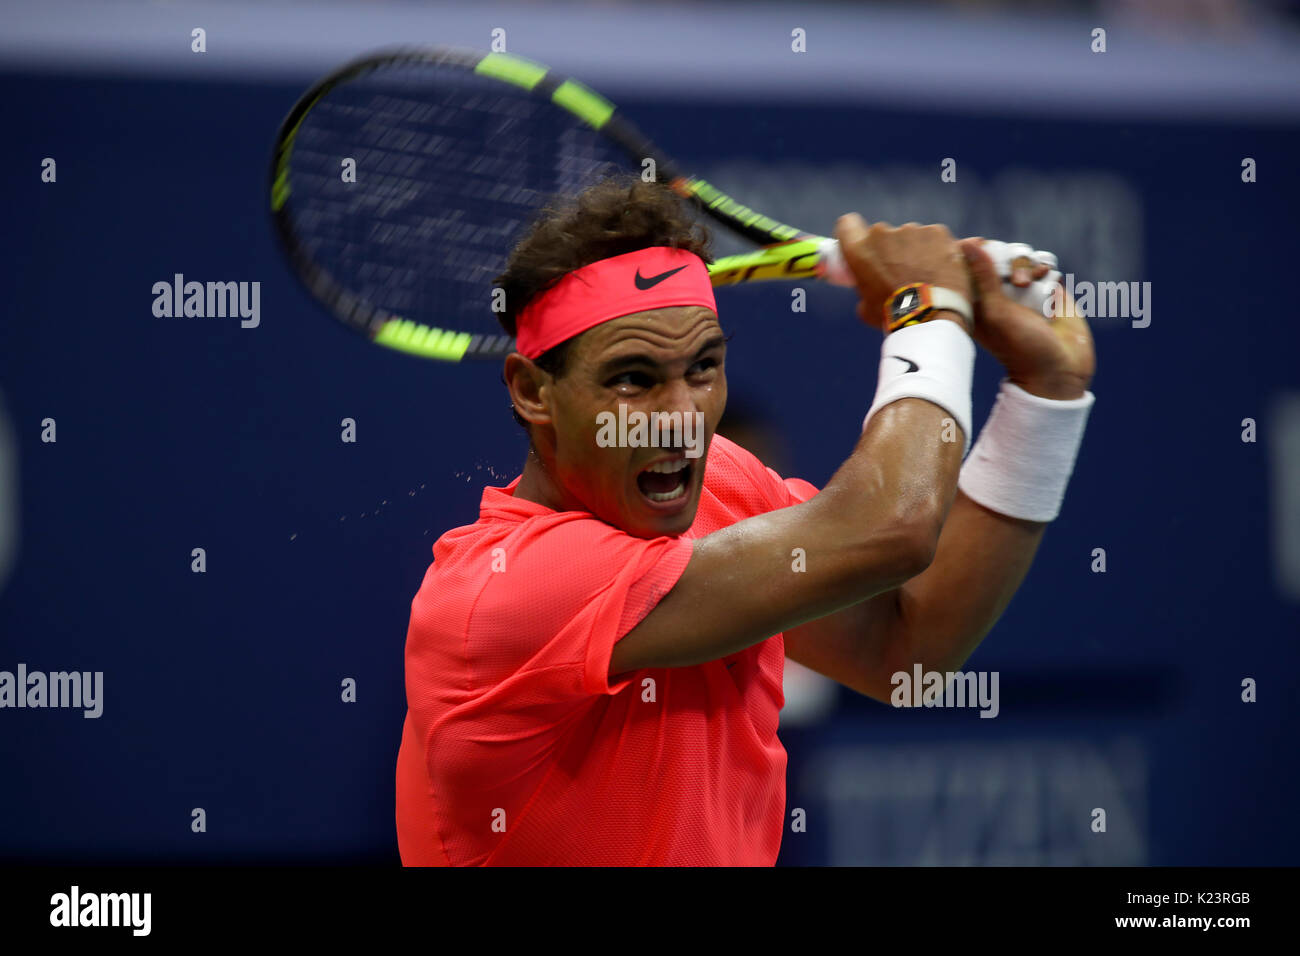 New York, Vereinigte Staaten. 29 Aug, 2017. US Open Tennis: New York, 29. August 2017 - Rafael Nadal aus Spanien in Aktion gegen Dusan Lajovic von Serbien in der ersten Runde bei den US Open in Flushing Meadows, New York. Nadal gewann in zwei Sätzen. Quelle: Adam Stoltman/Alamy leben Nachrichten Stockfoto